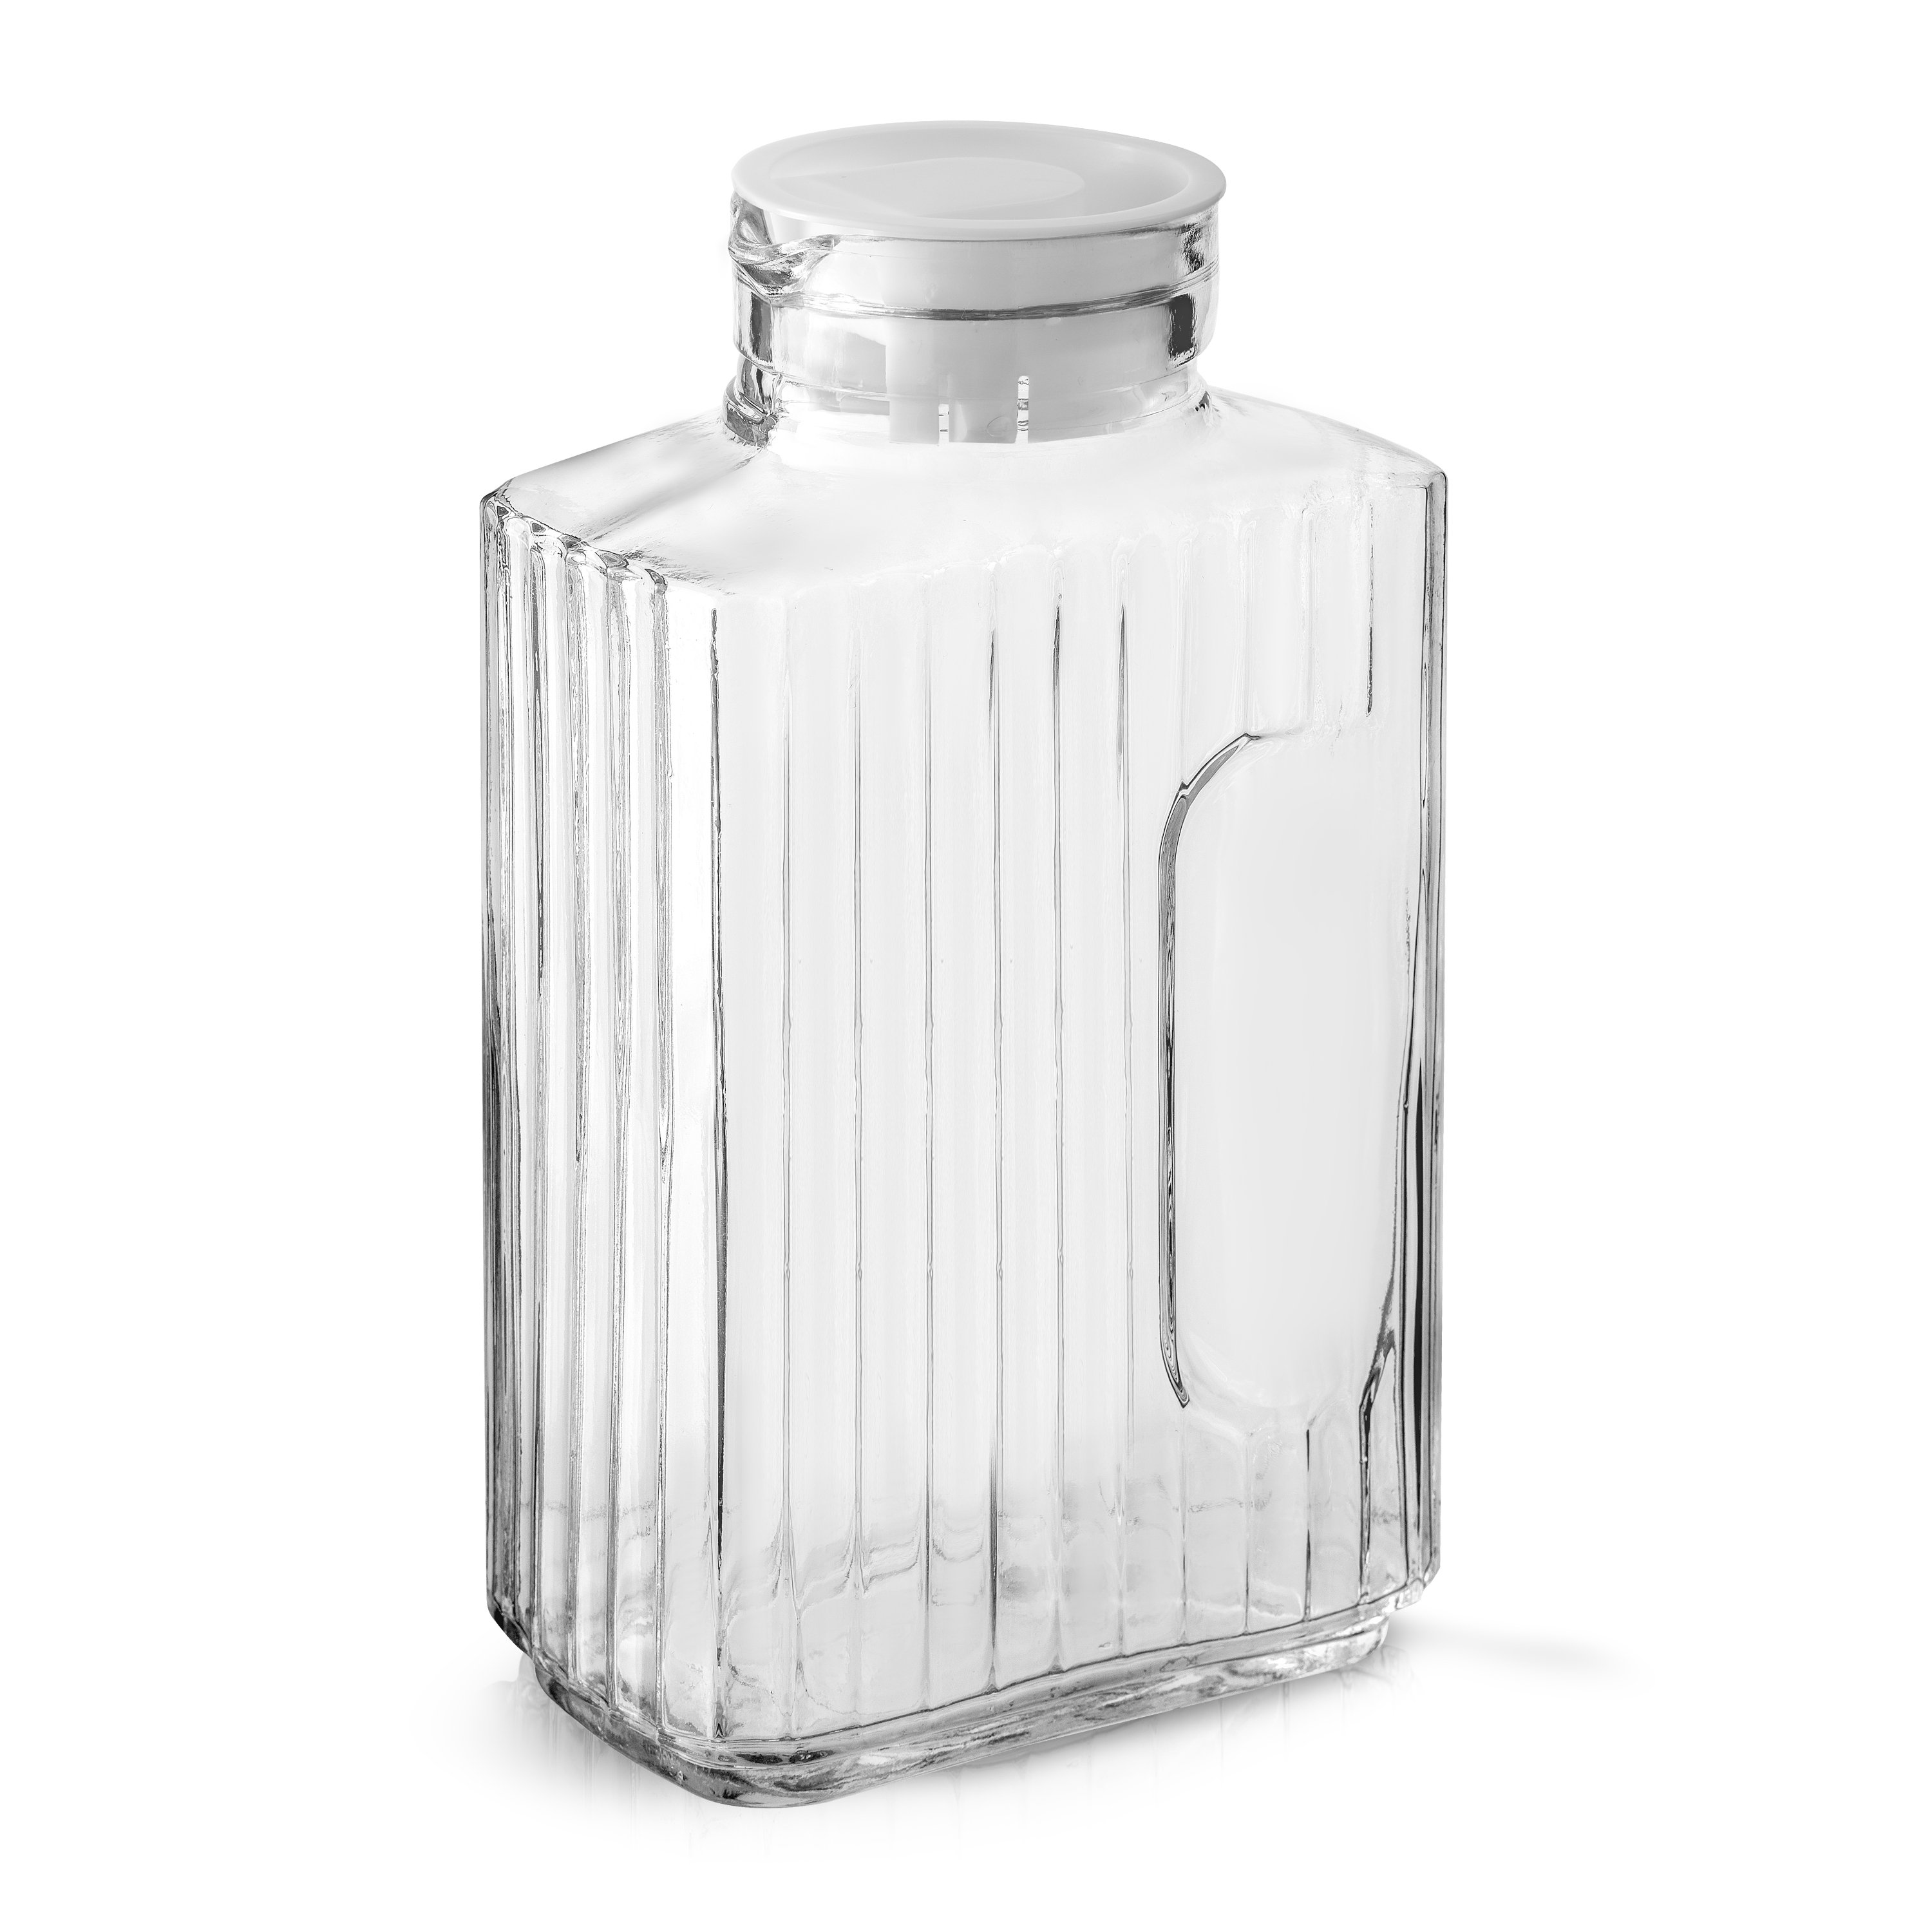 https://assets.wfcdn.com/im/63042927/compr-r85/2345/234516336/joyjolt-glass-pitcher-with-lids-for-iced-tea-of-juice-pitcher-beverage-serveware-2-lids-68-oz.jpg